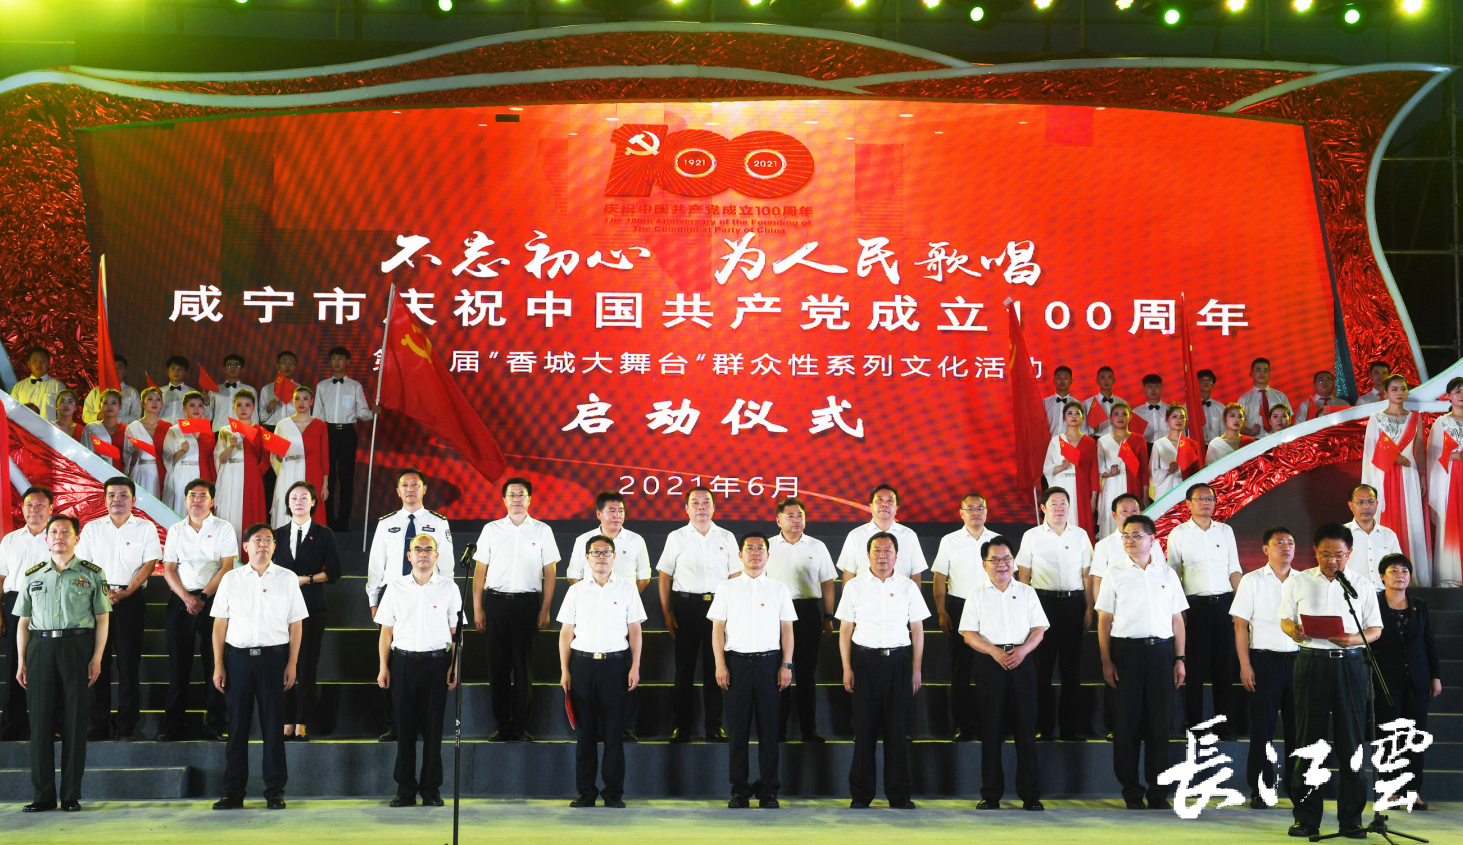 最美歌声献给党咸宁市开展庆祝建党100周年系列文化活动